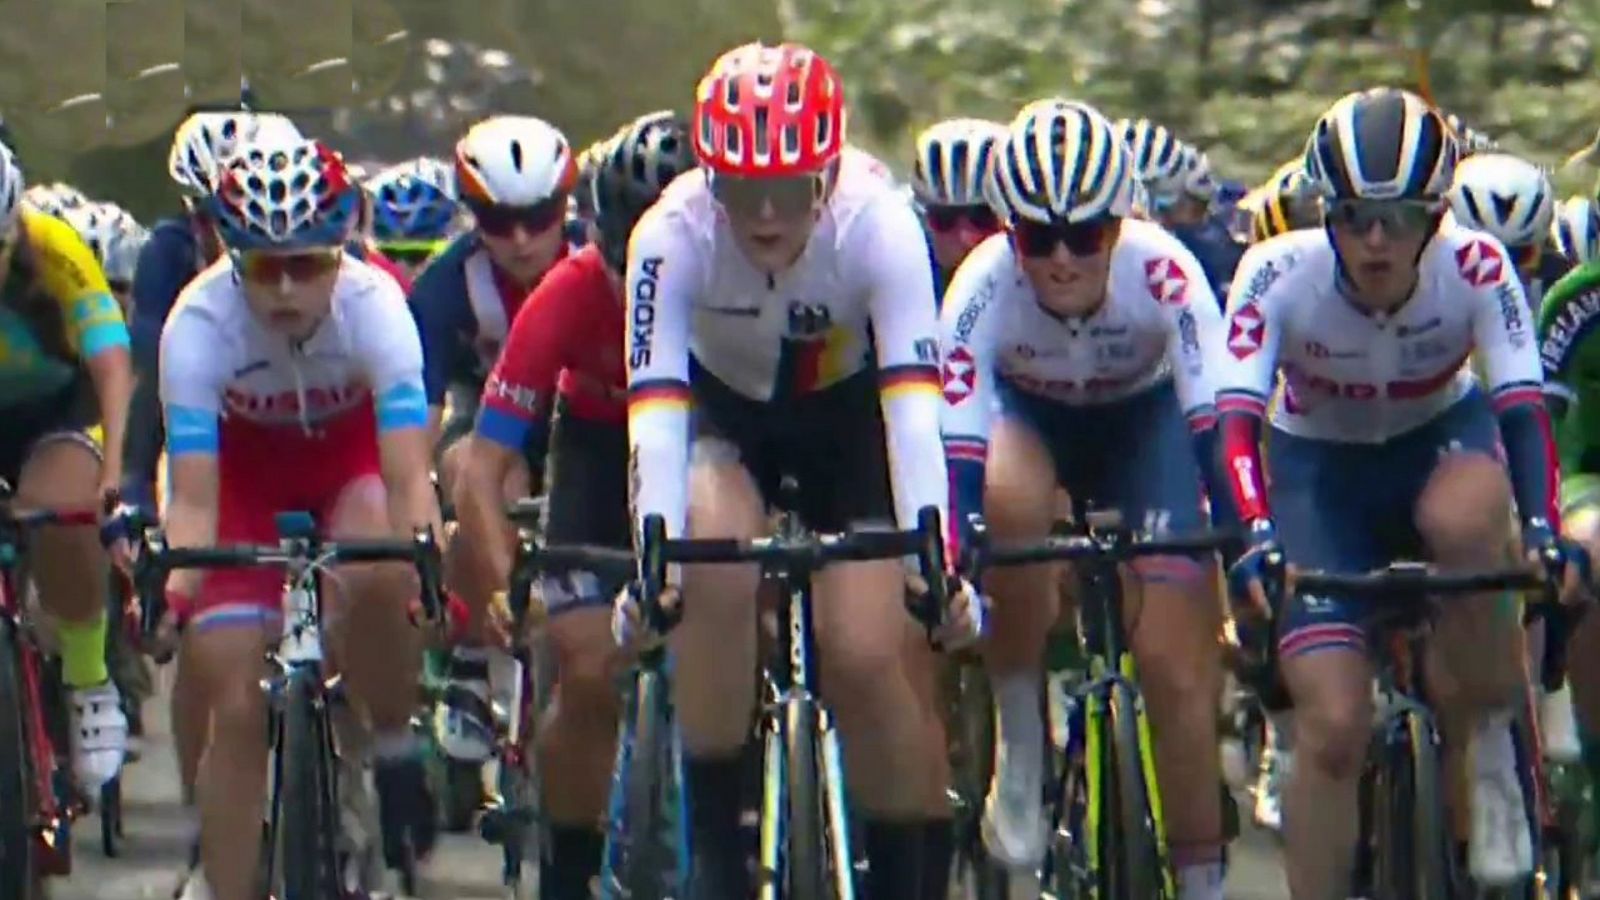 Ciclismo - Campeonato del mundo en ruta. Prueba junior Femenina